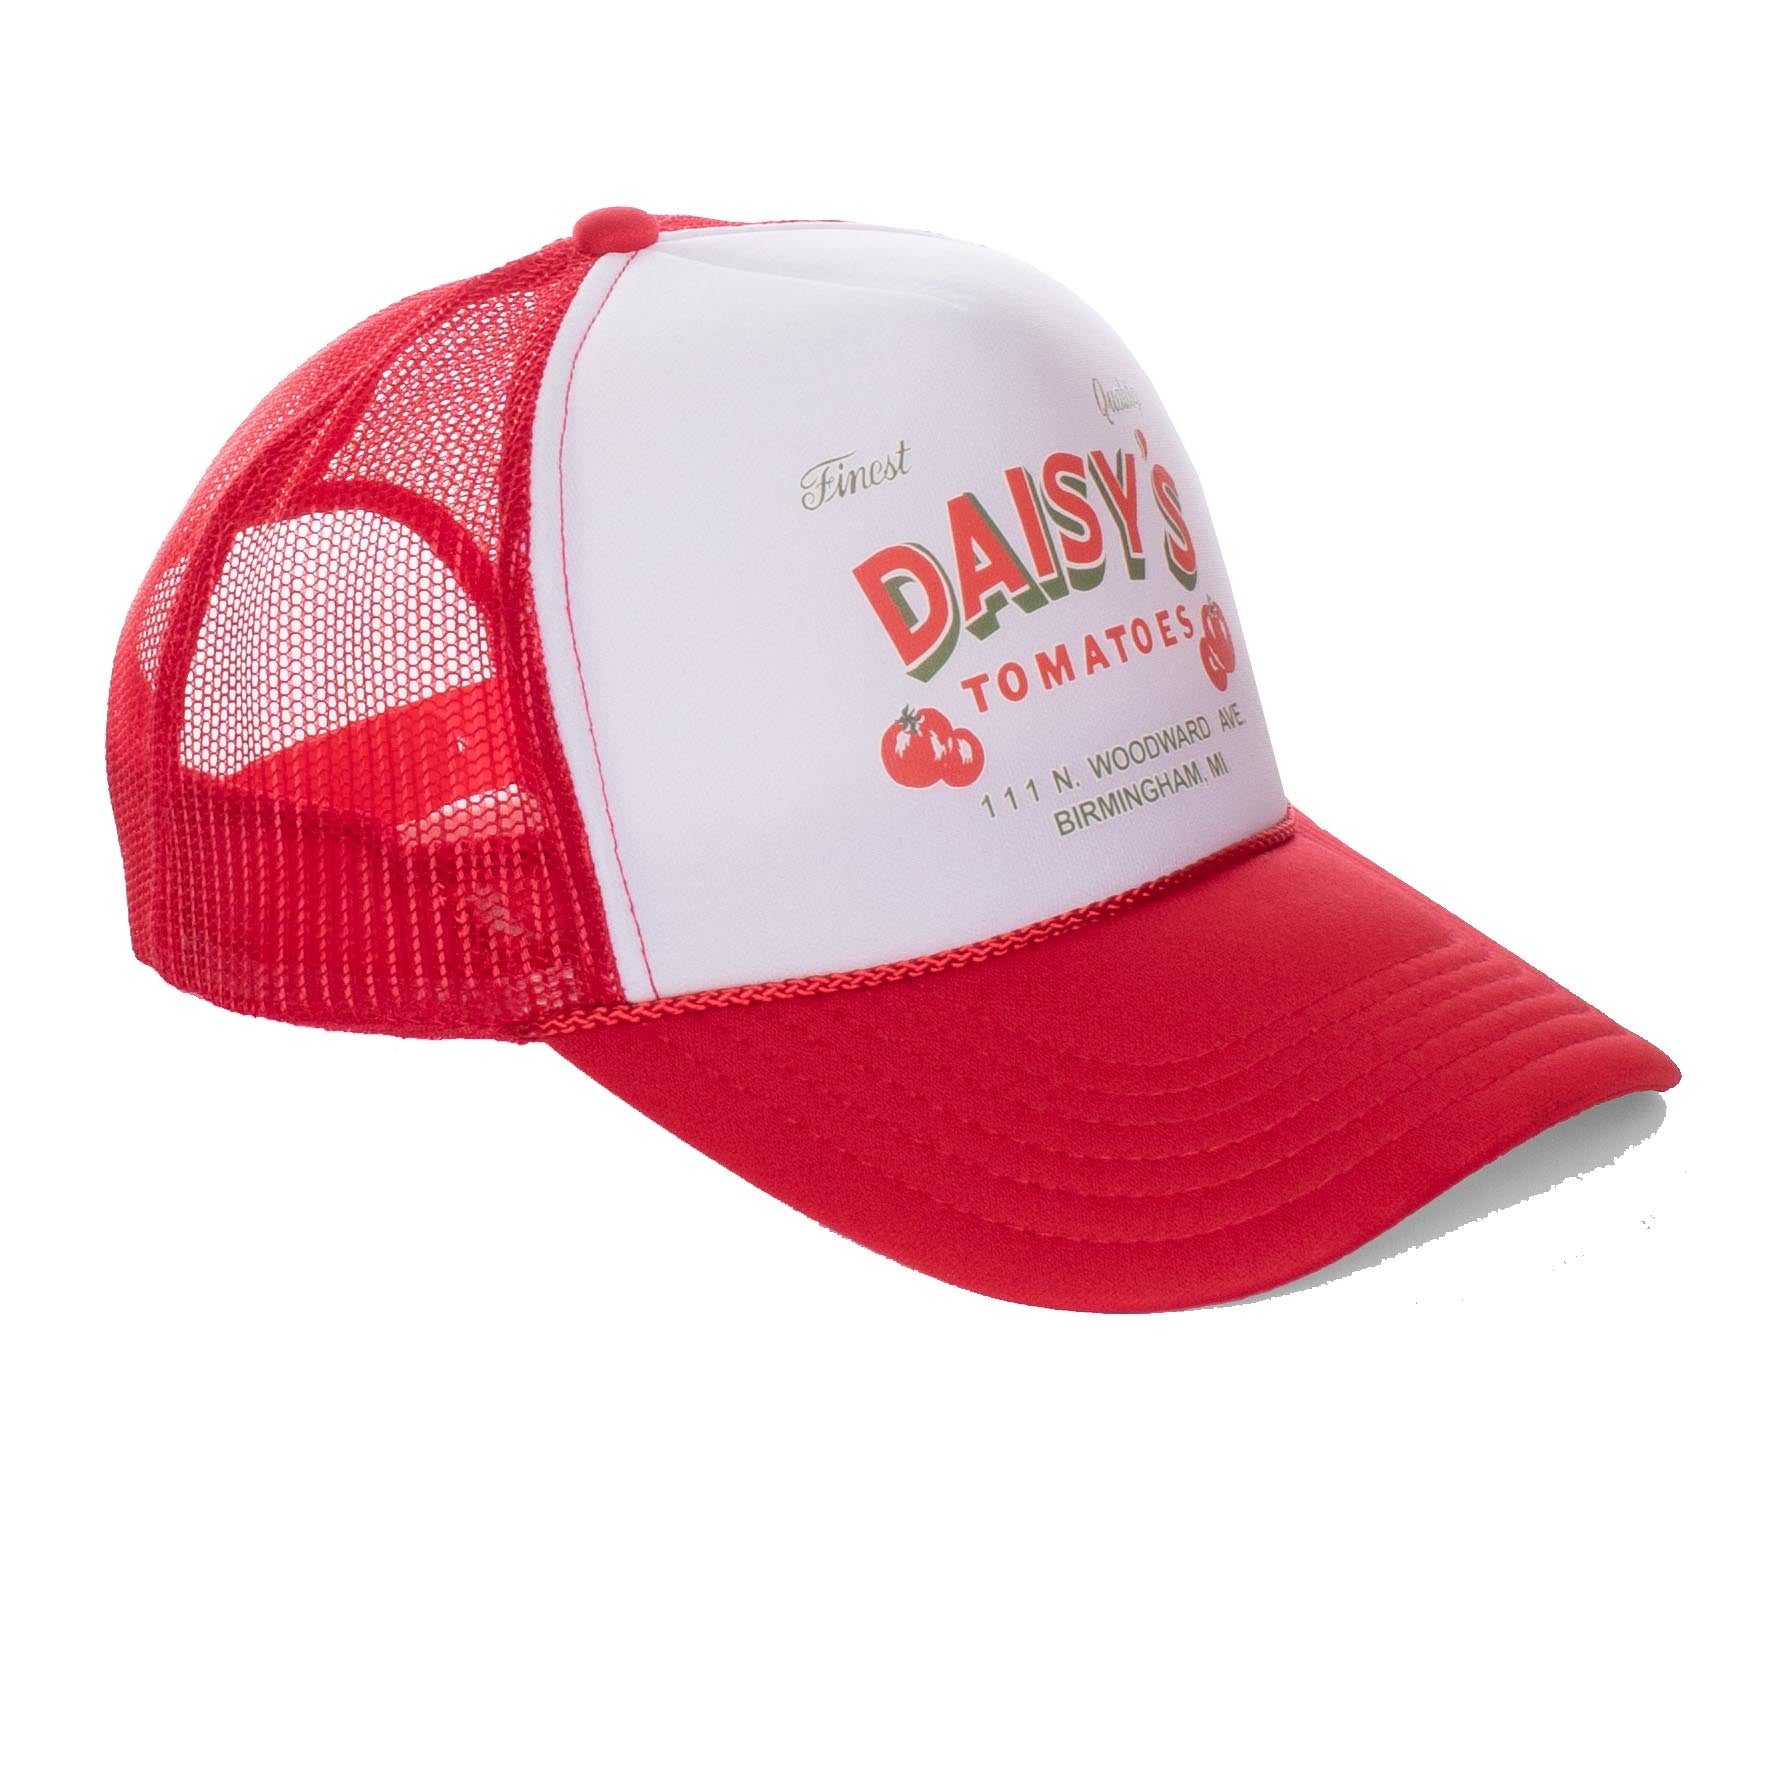 DAISY'S Trucker Cap